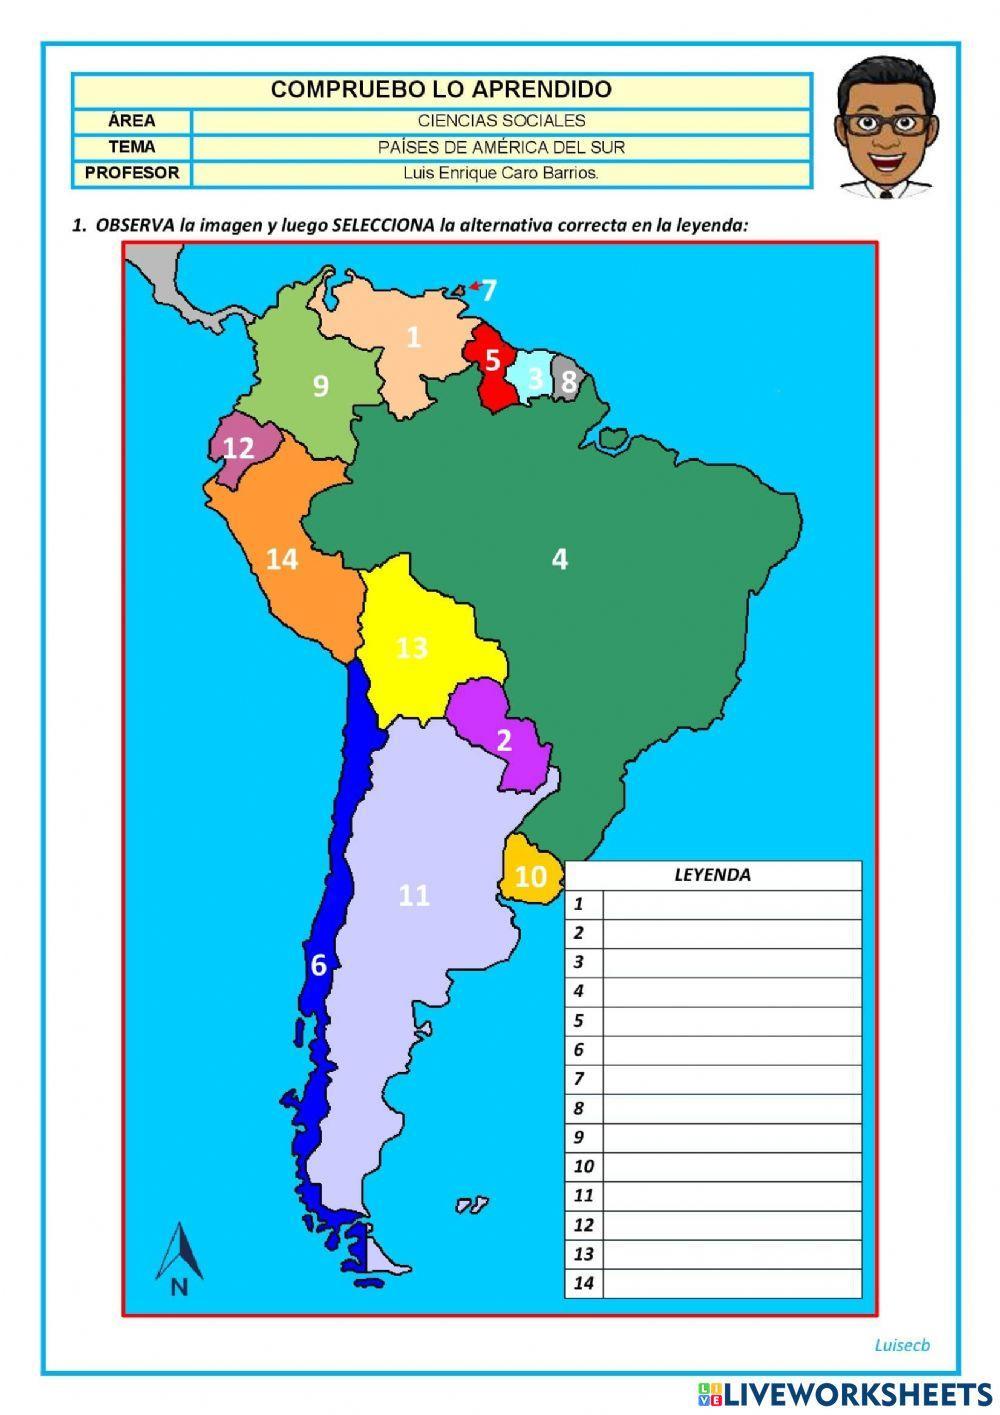 Sudamerica: países